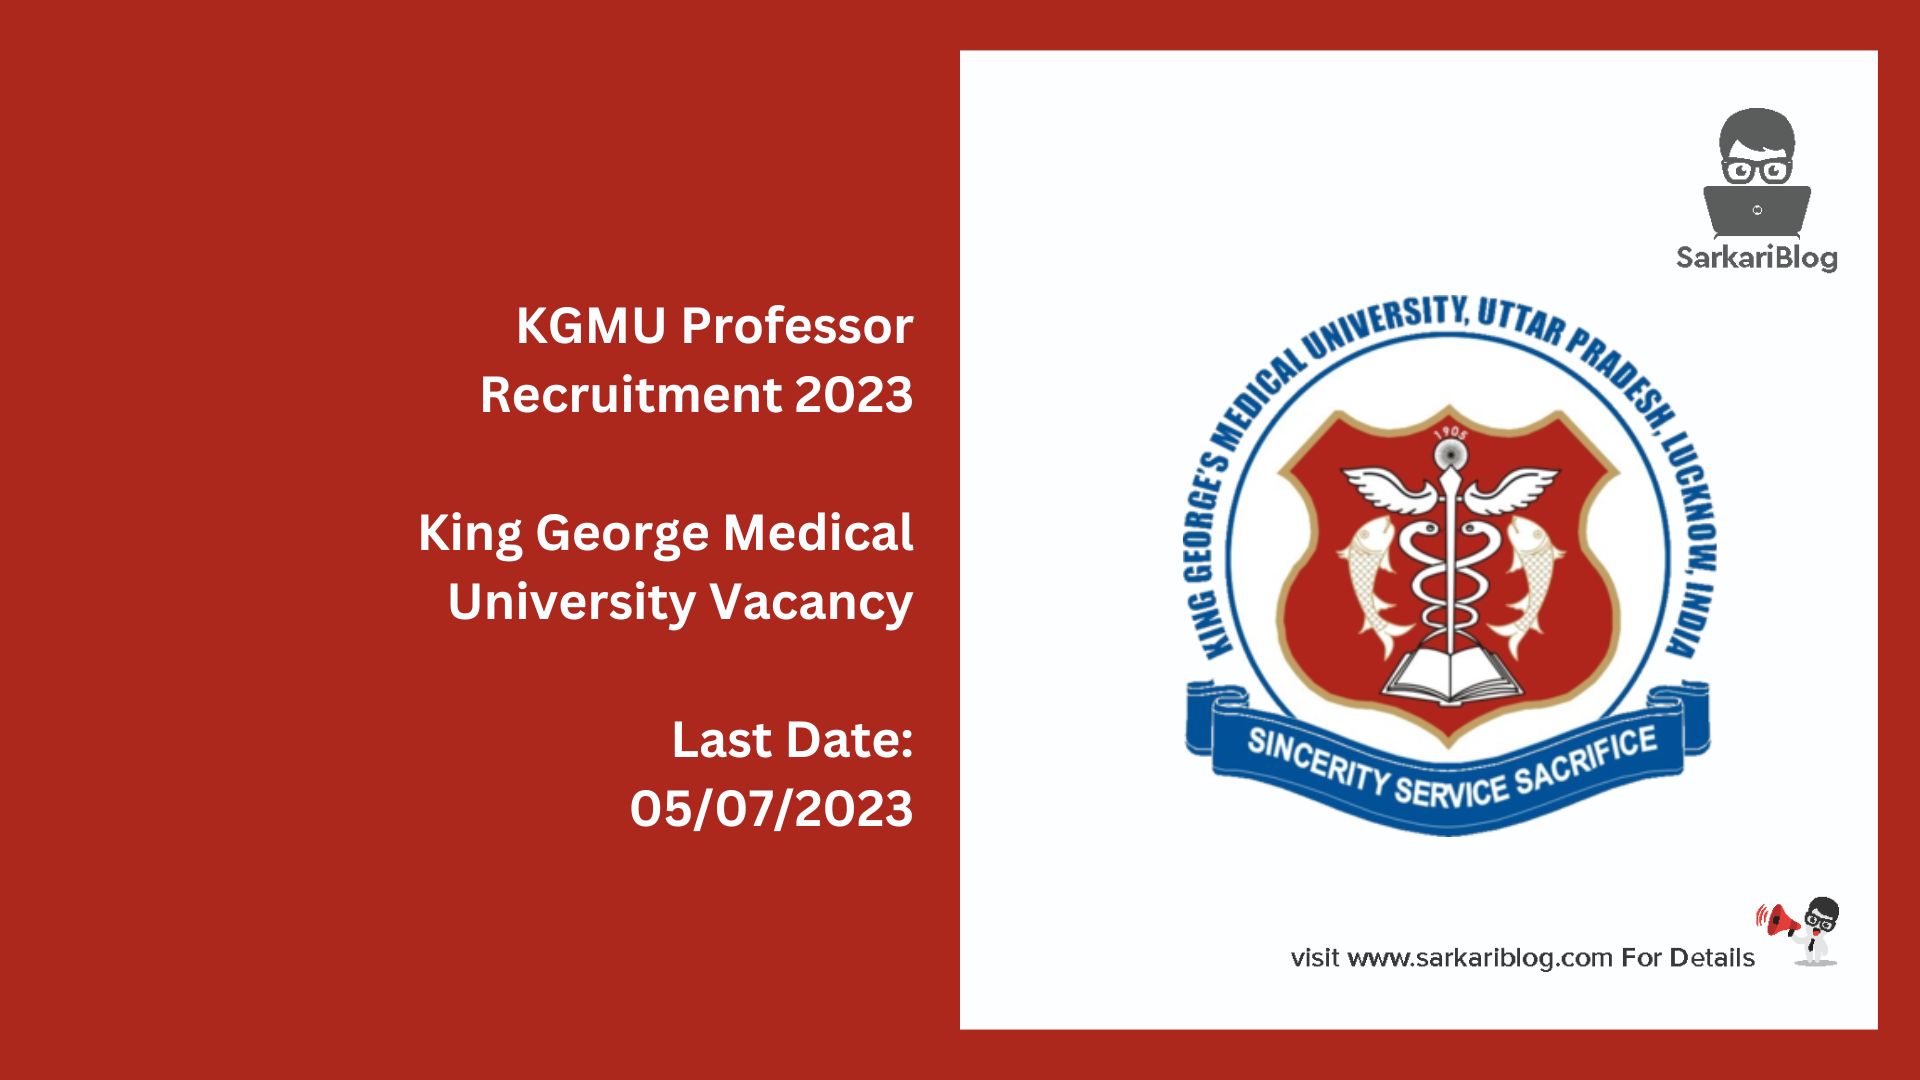 KGMU Professor Recruitment 2023